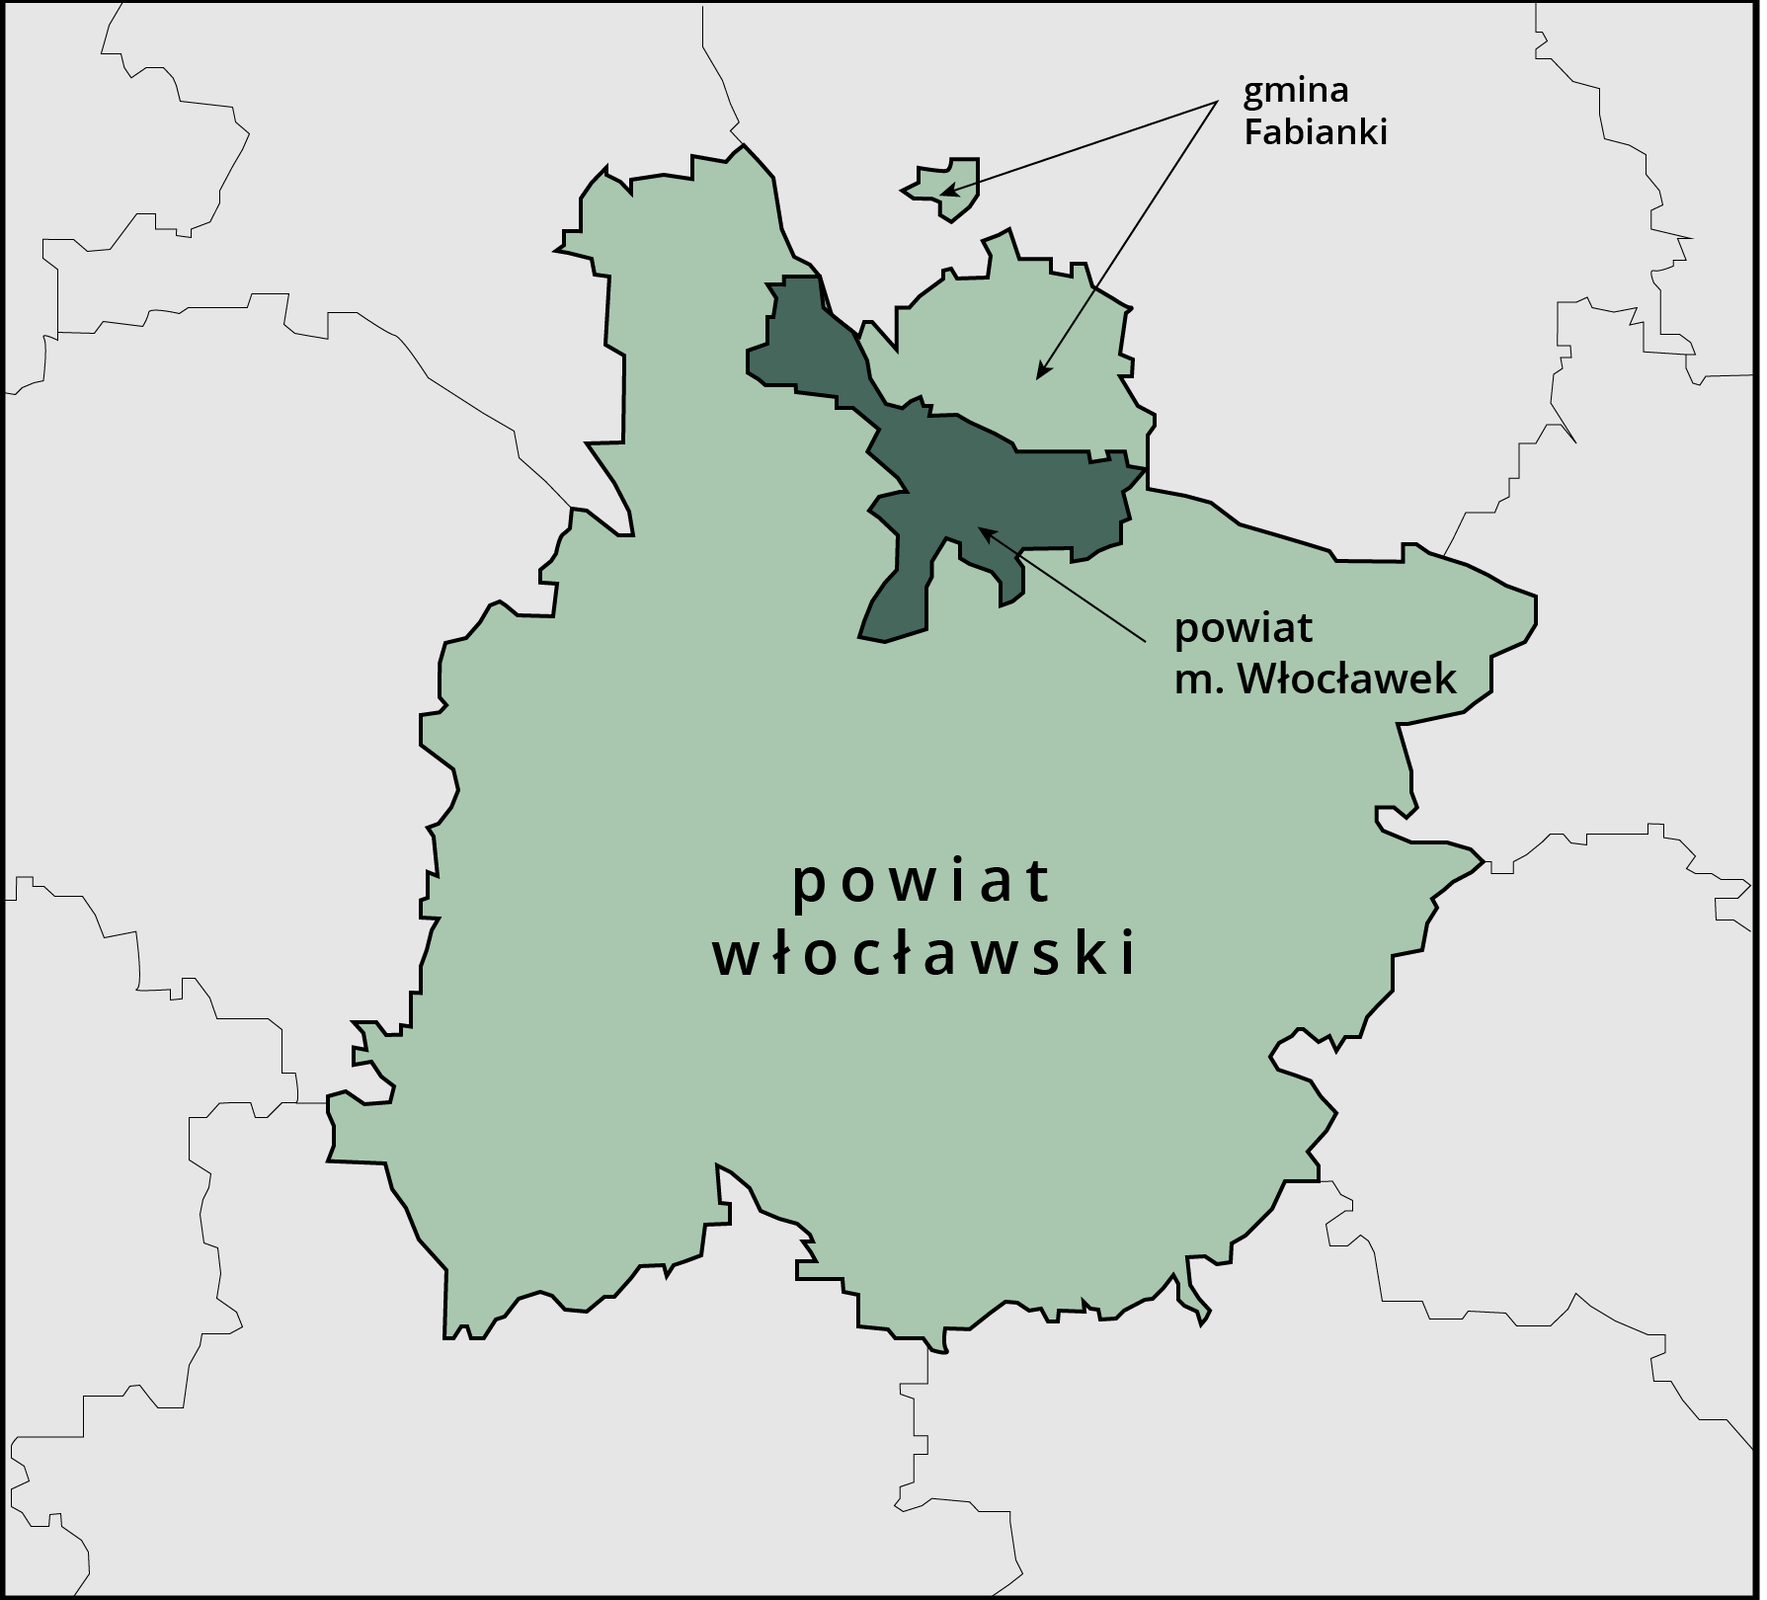 Na fragmencie mapy z powiatem włocławskim zaznaczono w północnej części powiat miasta Włocławek i graniczącą z nim na północy gminę Fabianki. 